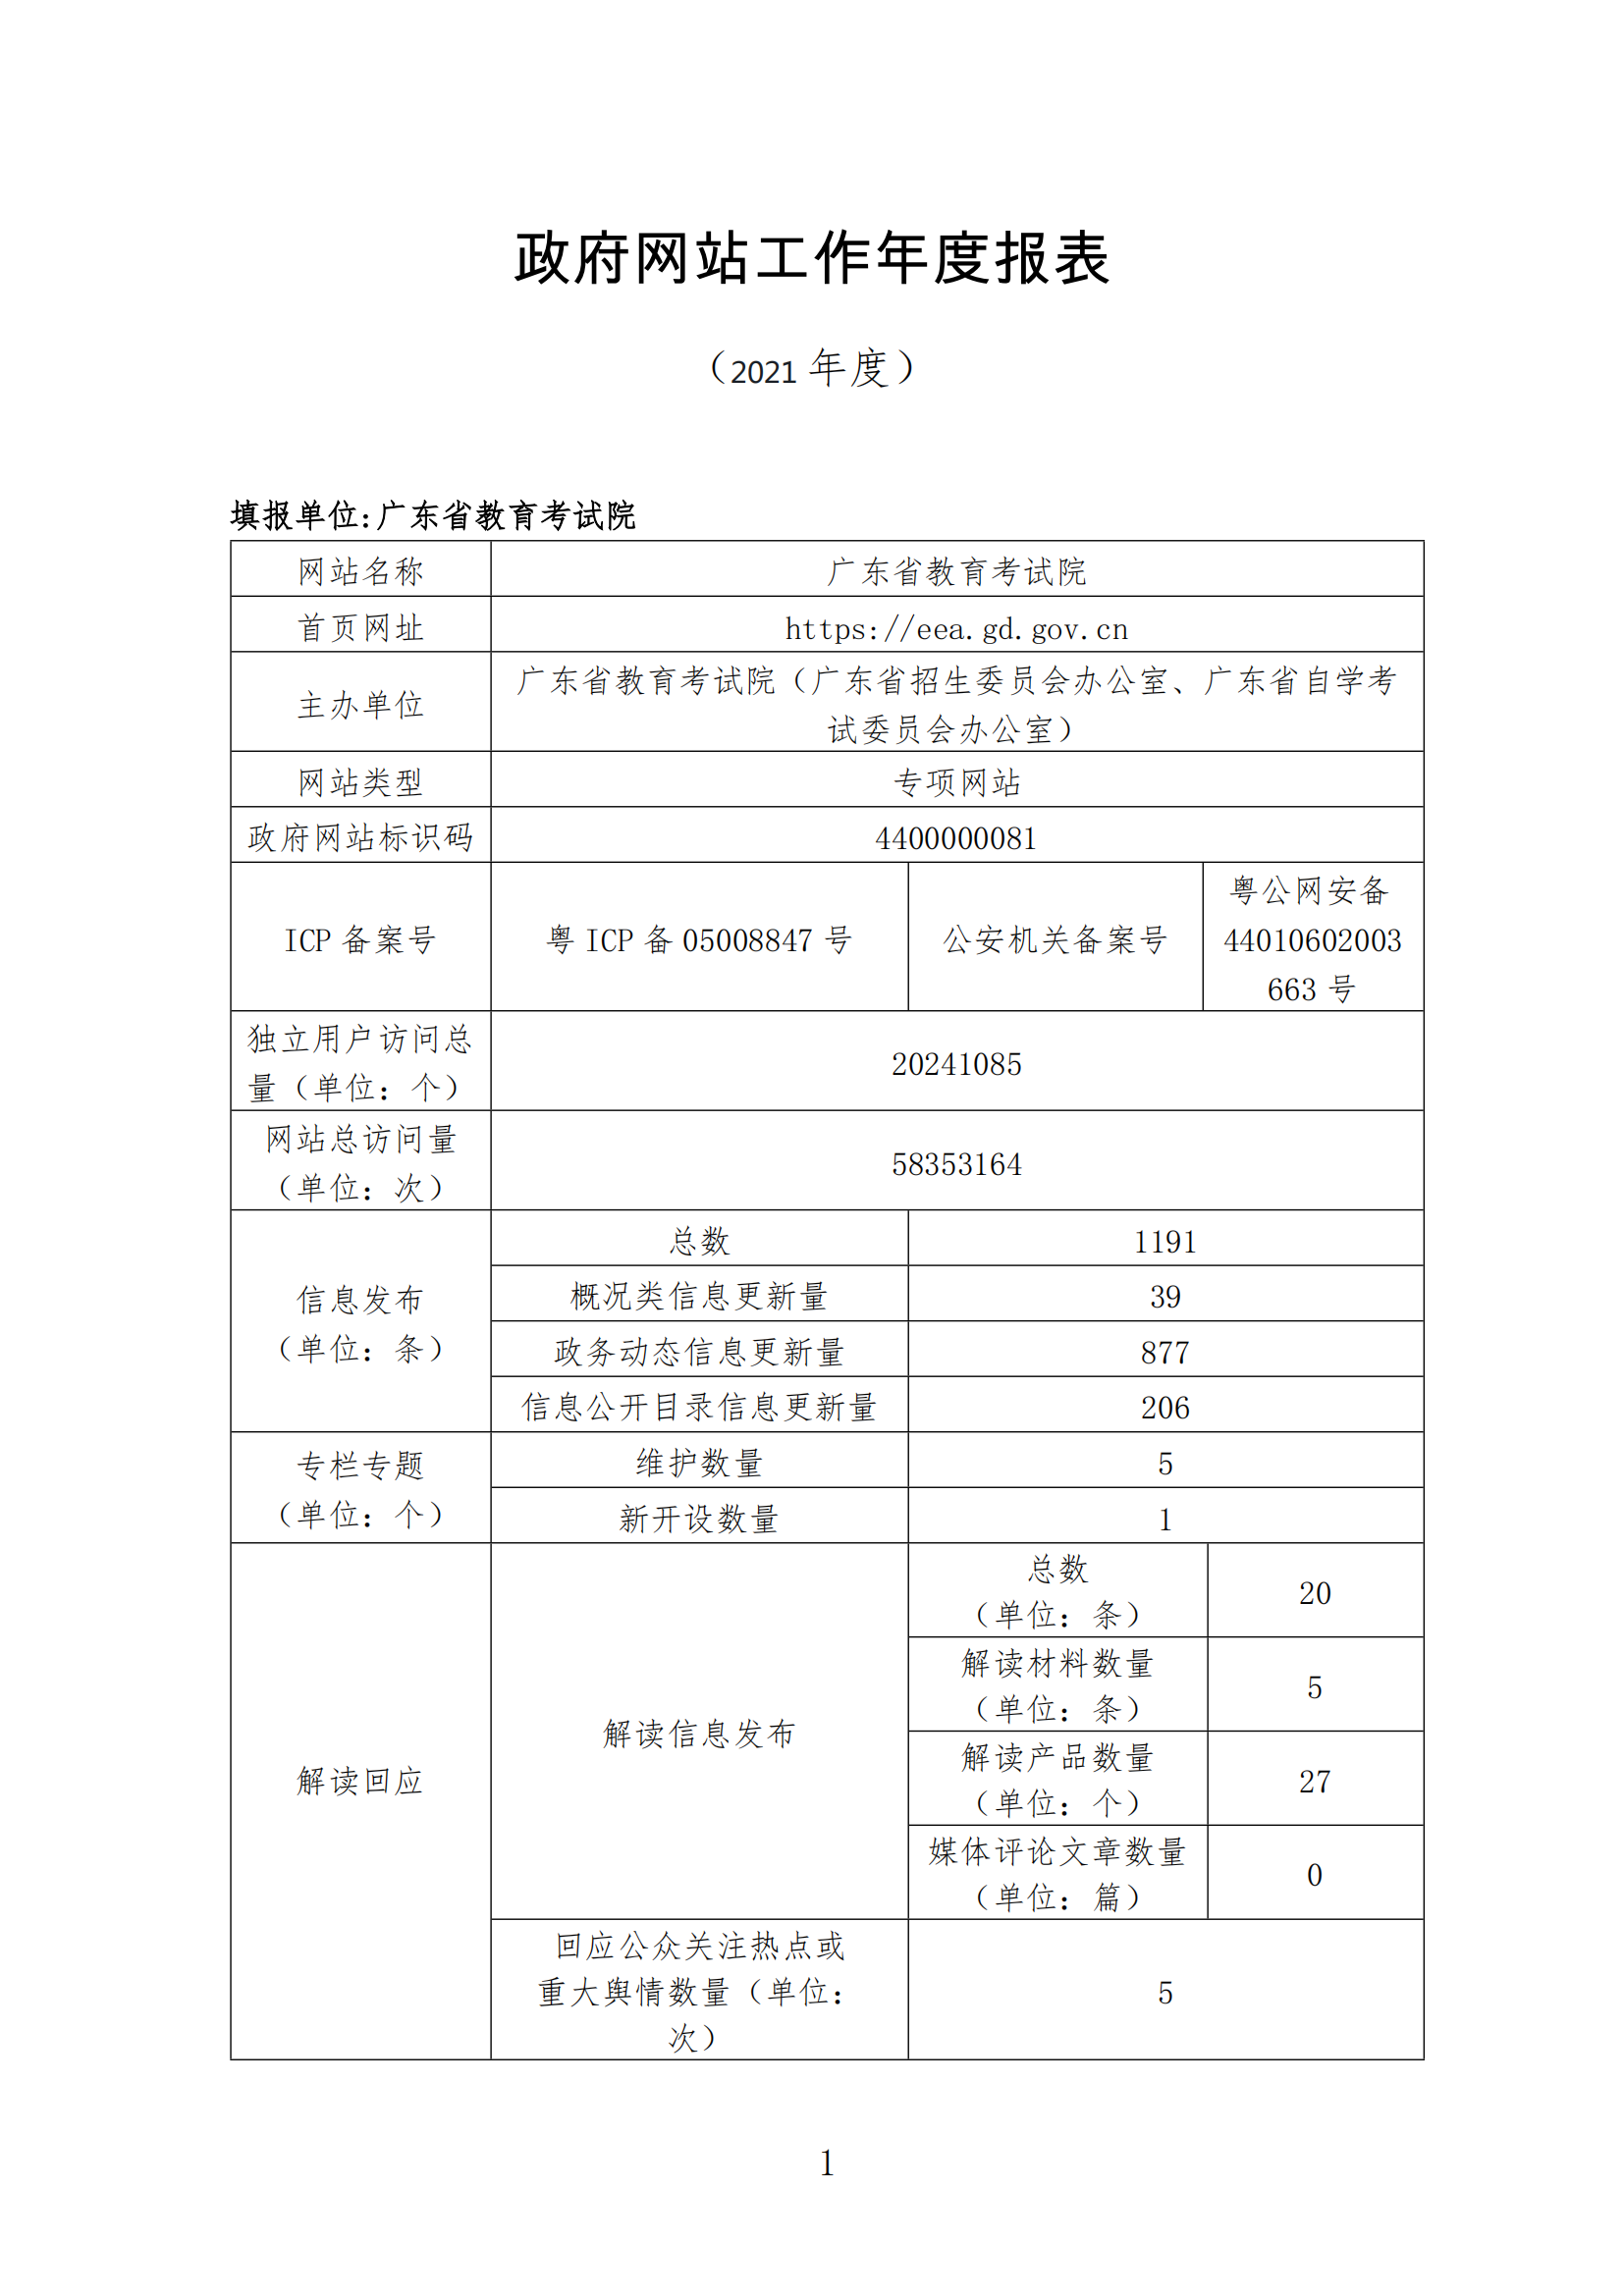 广东省教育考试院2021年政府网站工作年度报表_00.png